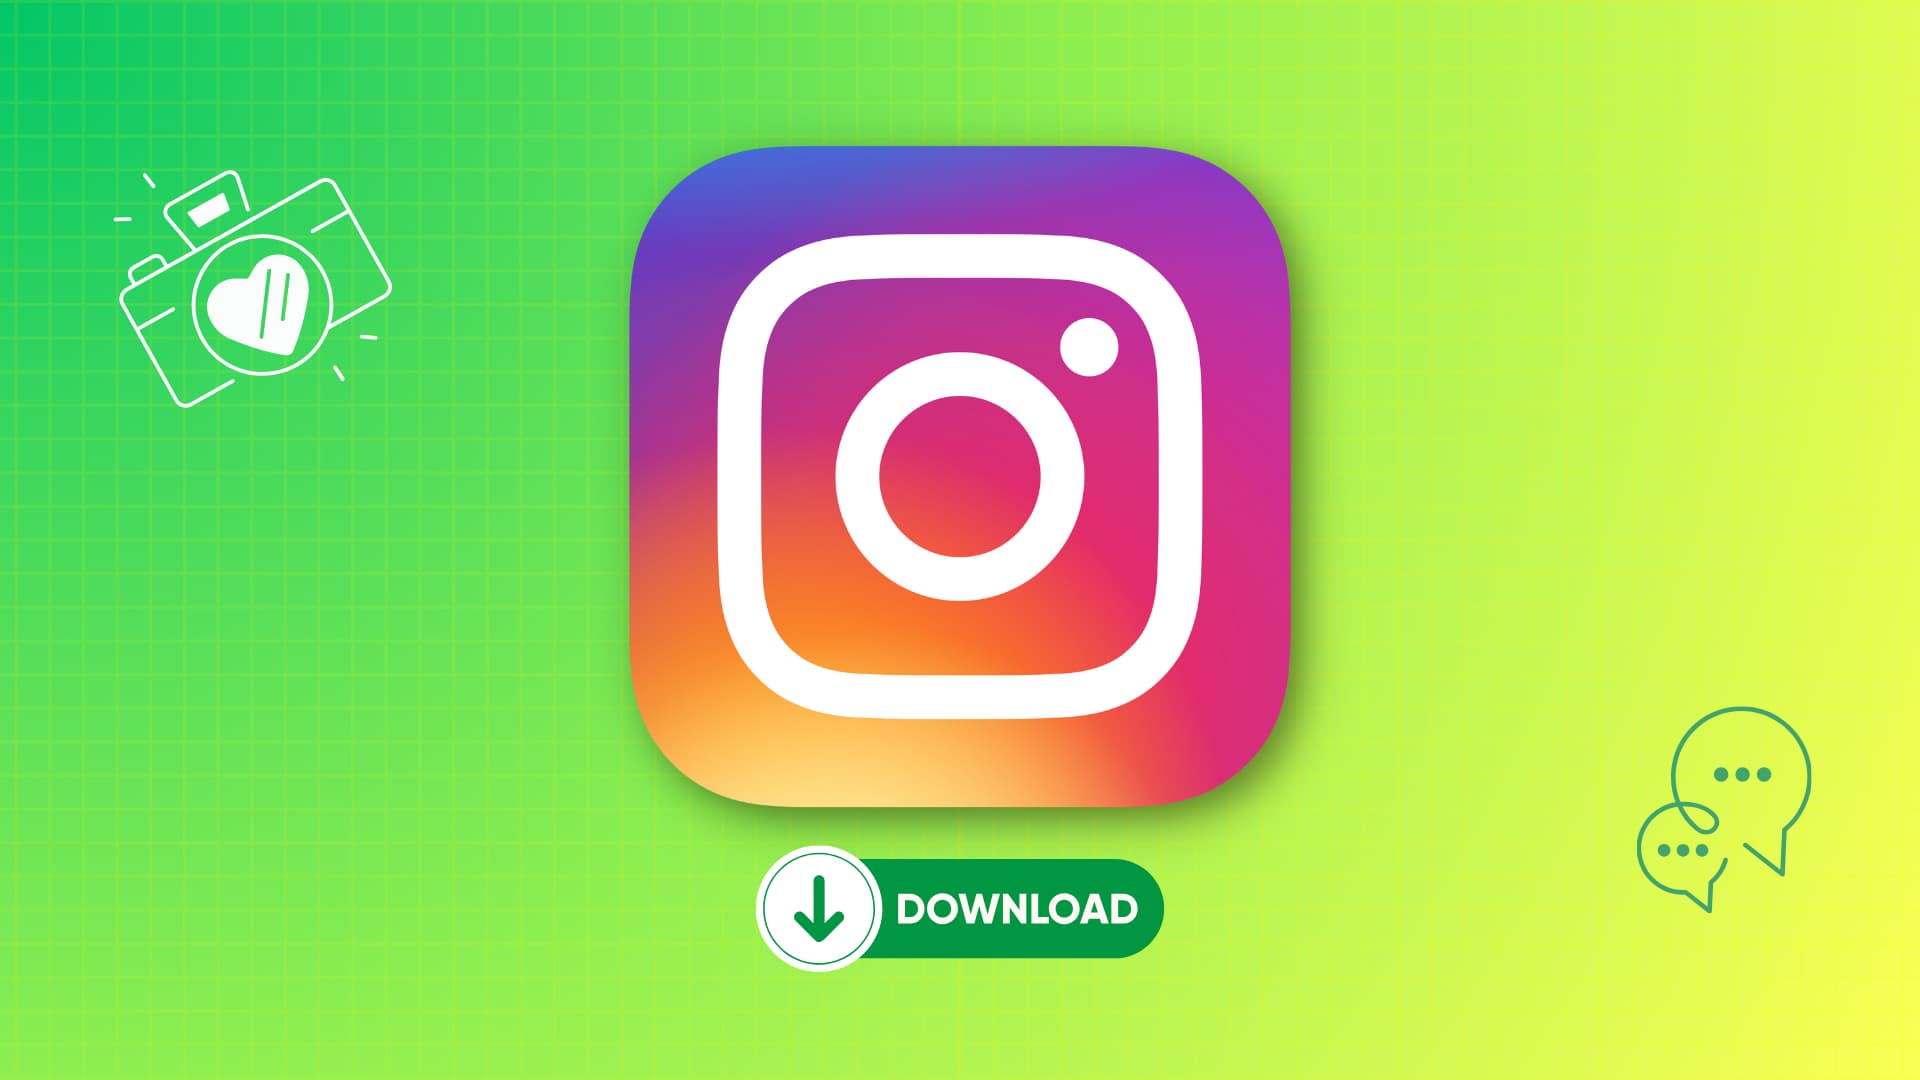 如何下载instagram的图片与视频，并保存到手机。 _如何下载instagram照片视频到手机 - 啊噗网